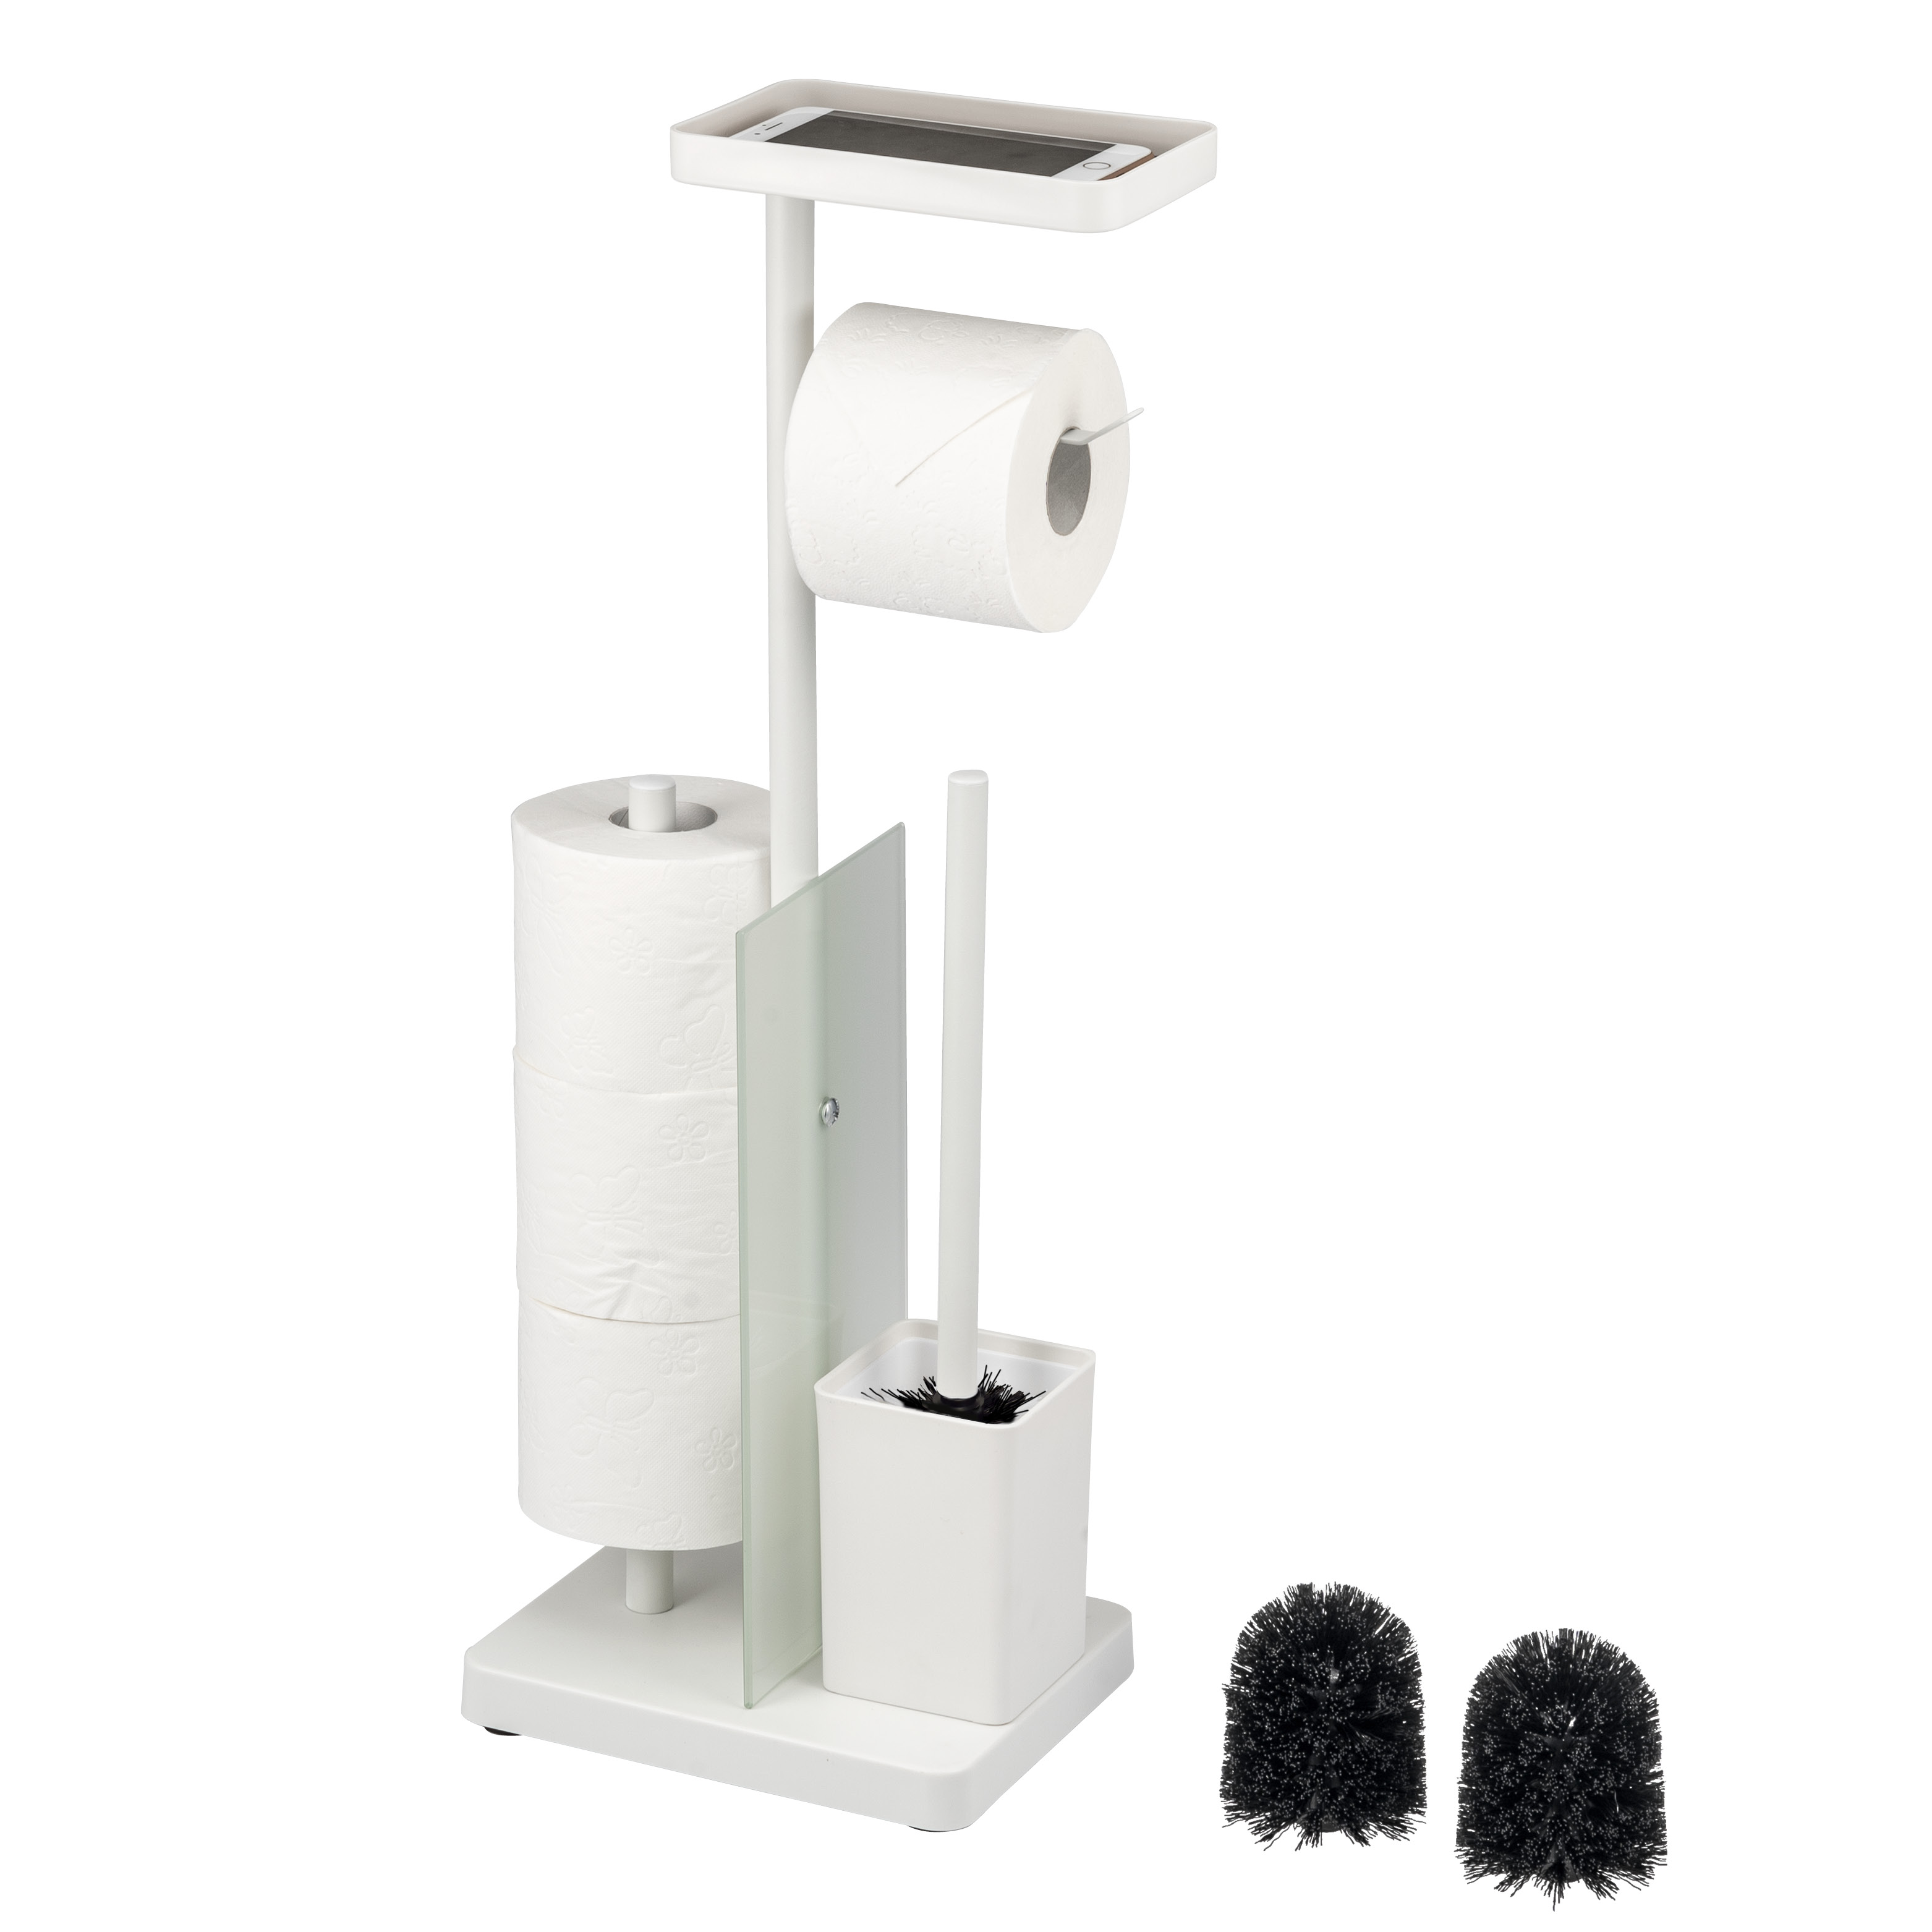 Stand WC-Garnitur 4in1, WC-Bürste, Rollenhalter, Ablage Glas/Metall weiß